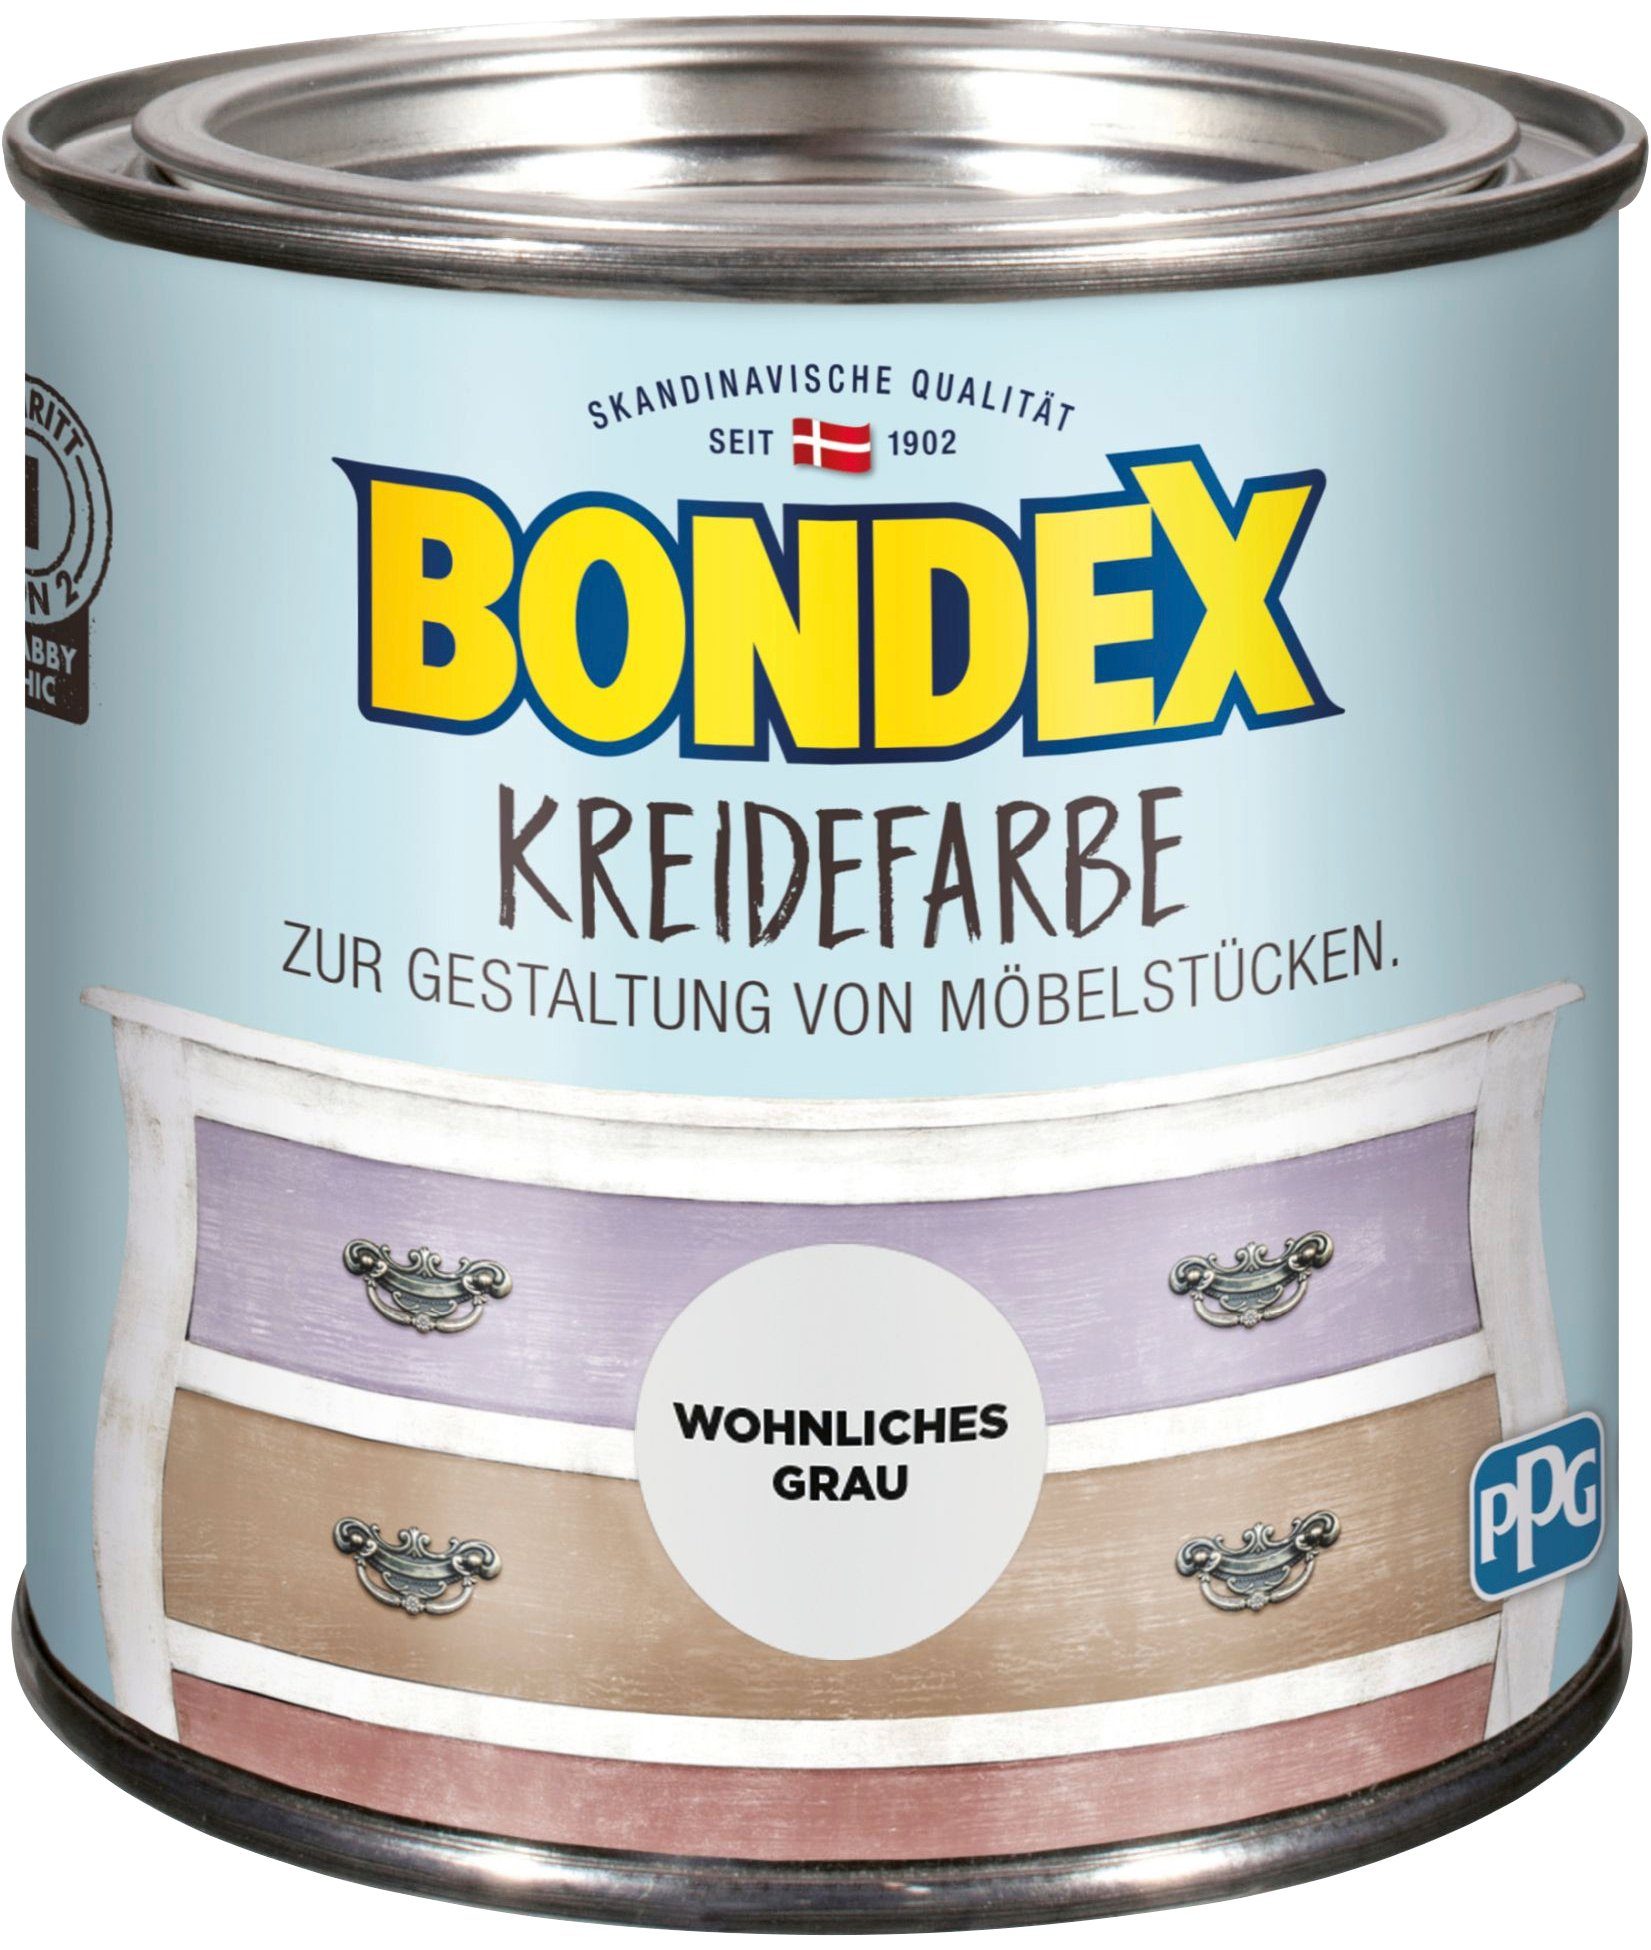 KREIDEFARBE, Kreidefarbe Gestaltung Wohnliches von l Bondex Grau 0,5 Möbelstücken, zur